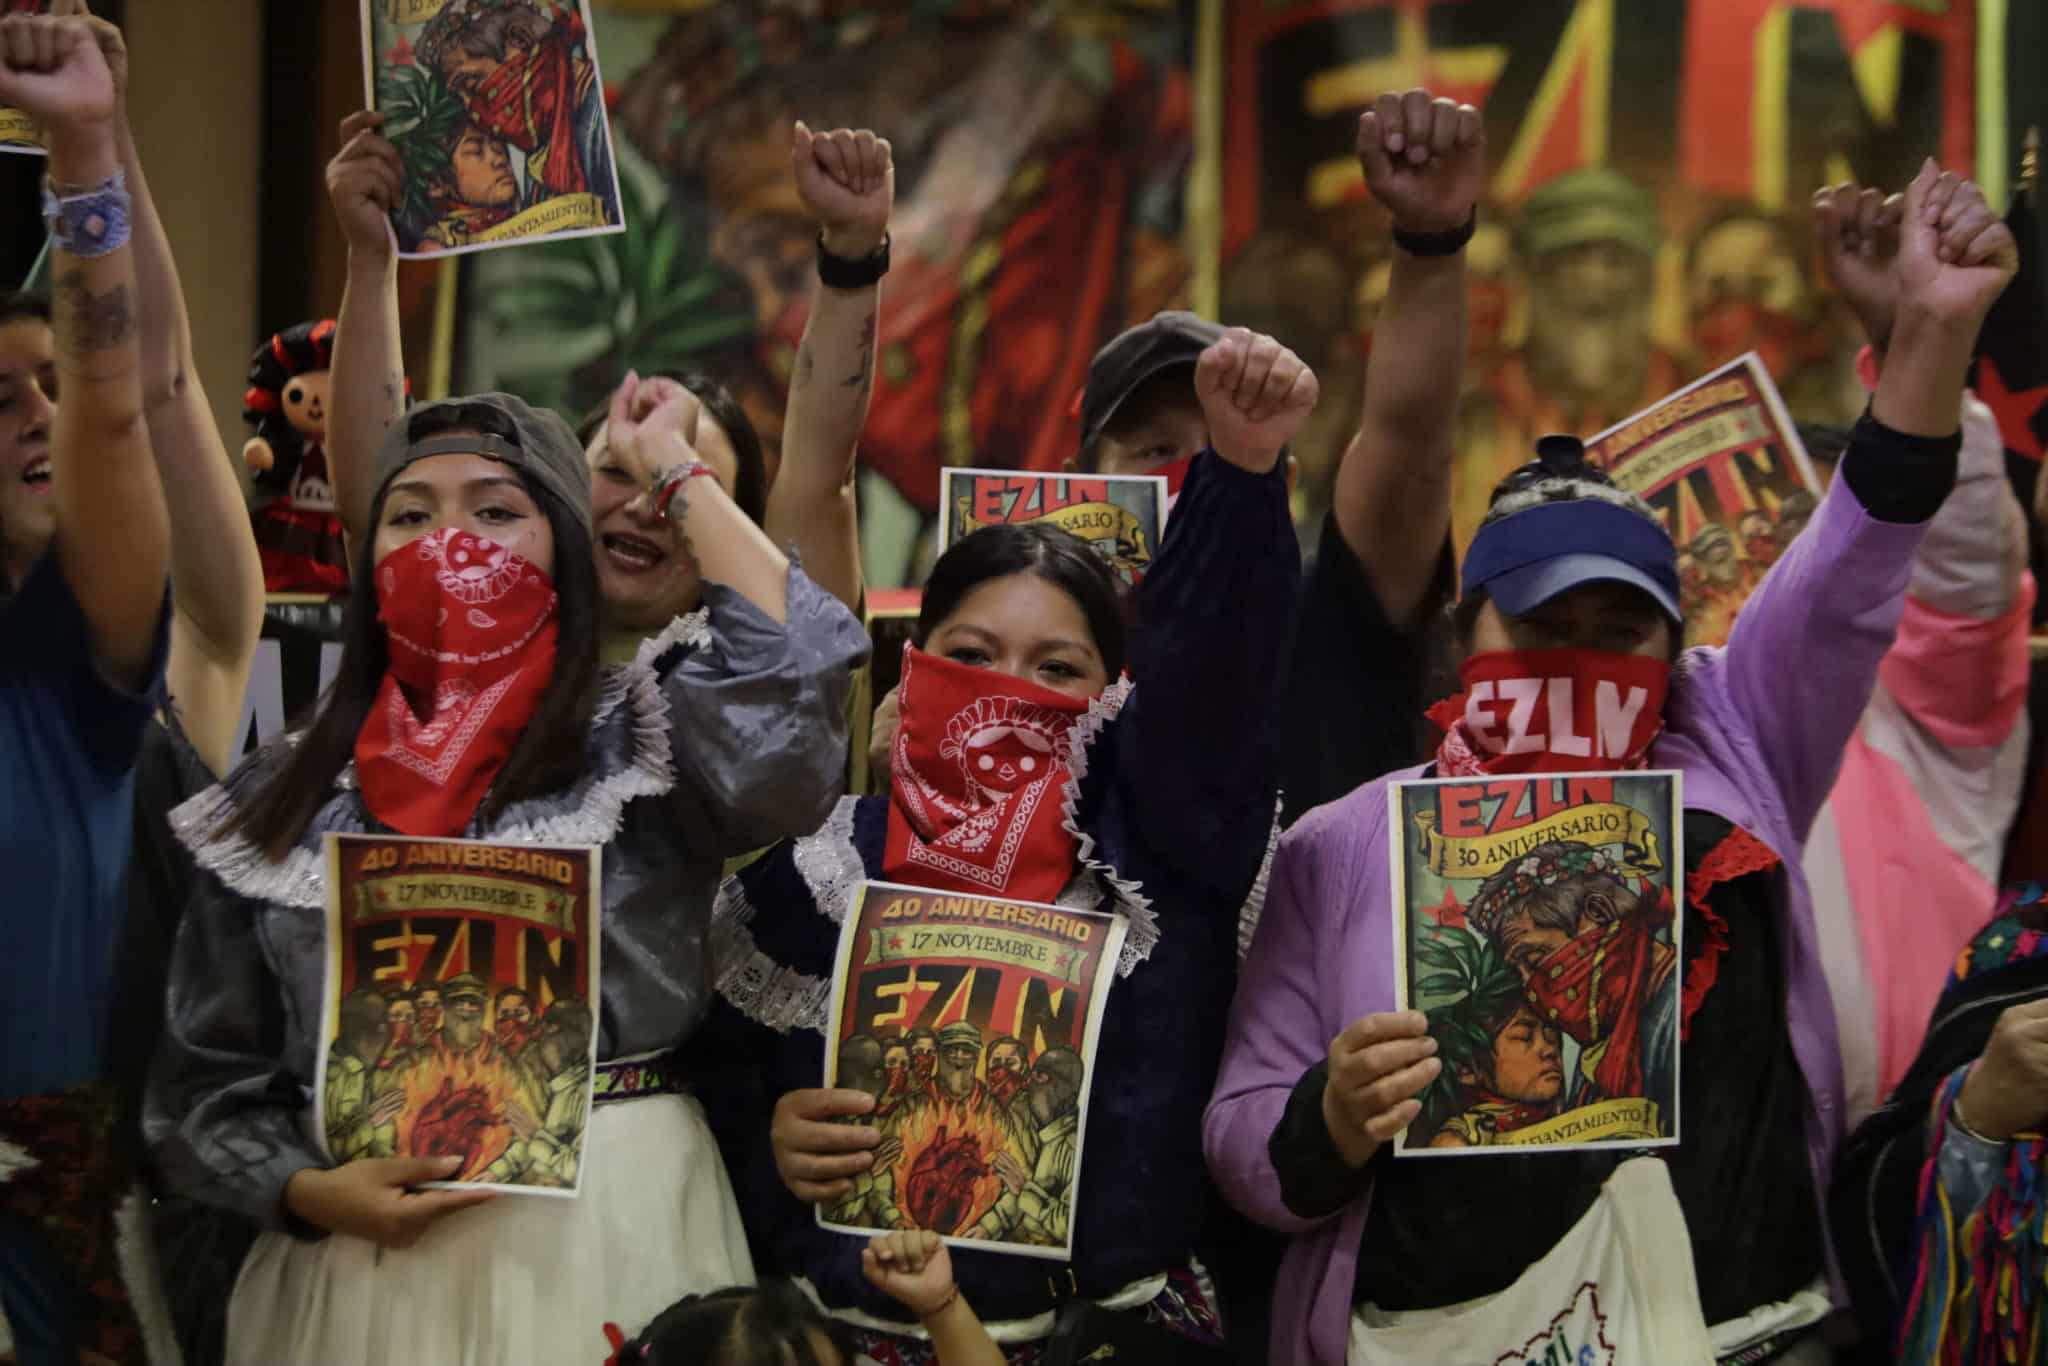 Un nouveau livre capture l’esprit révolutionnaire des mouvements de libération latino-américains